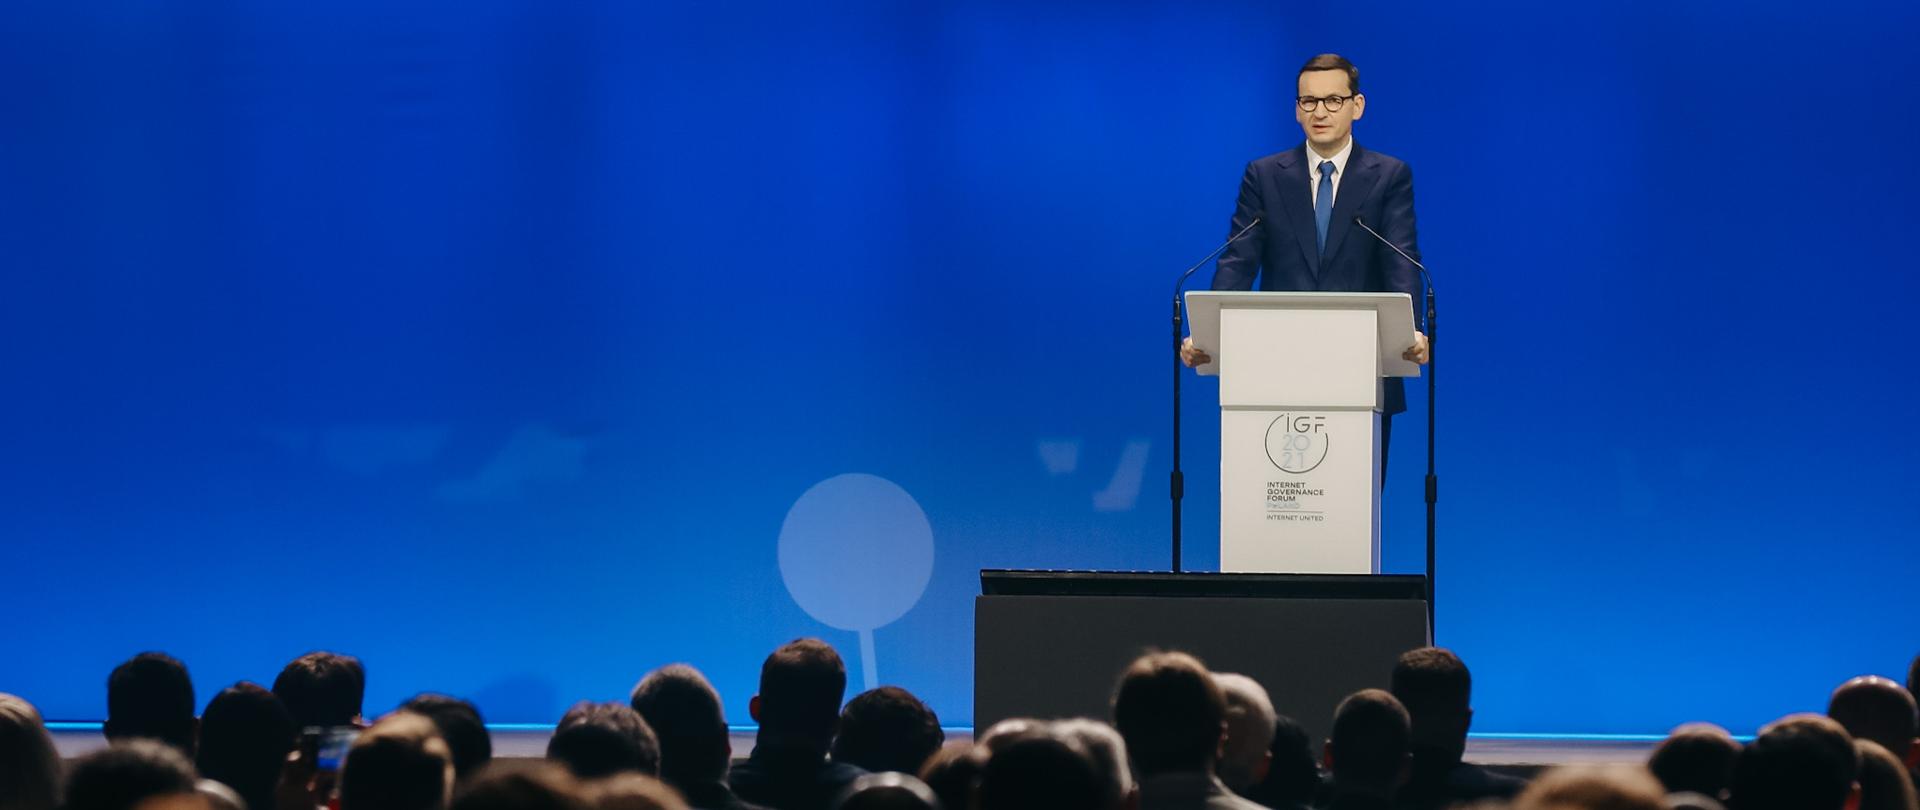 
Premier Mateusz Morawiecki podczas szczytu cyfrowego IGF 2021 w Katowicach